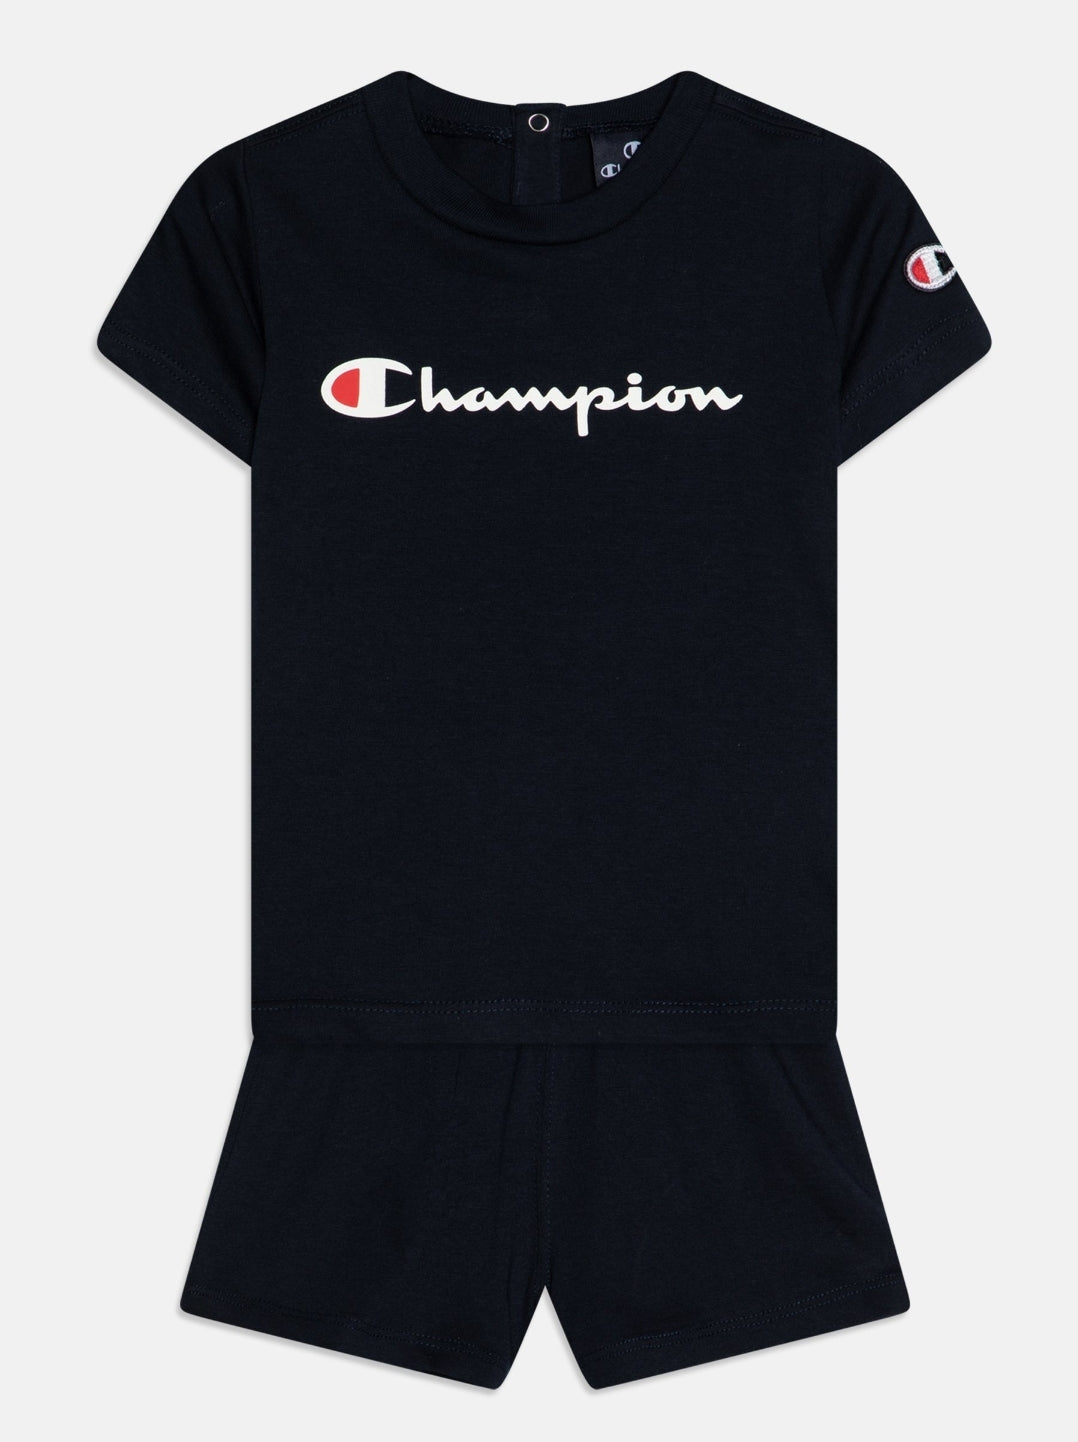 Champion Bébé T-Shirt und dunkle navyblaue Shorts und Shorts